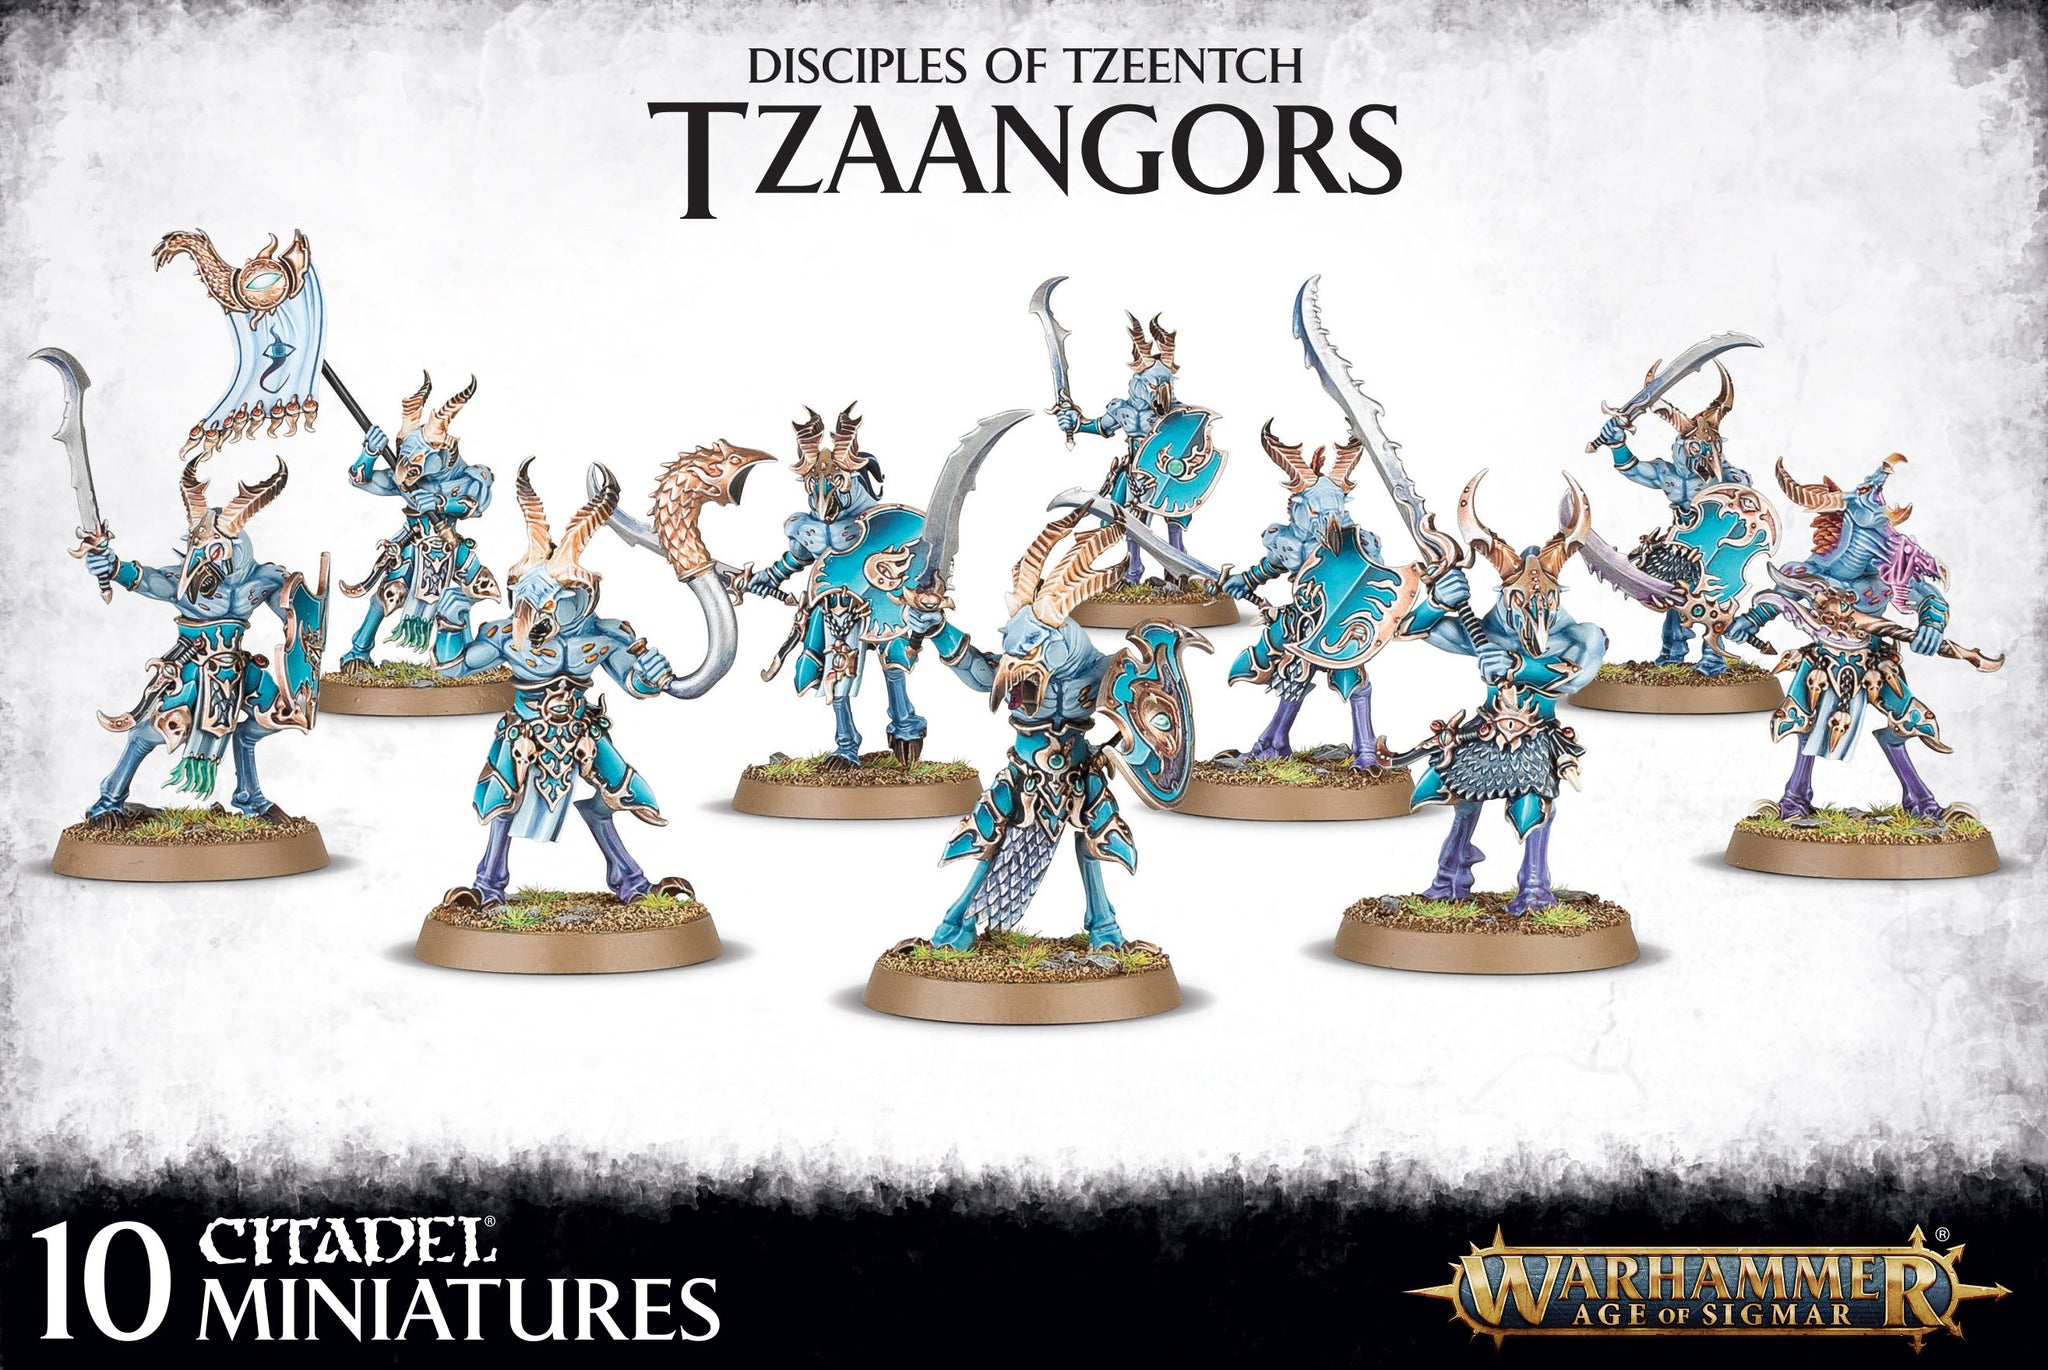 Warhammer Age of Sigmar: Disciples of Tzeentch: Tzaangors